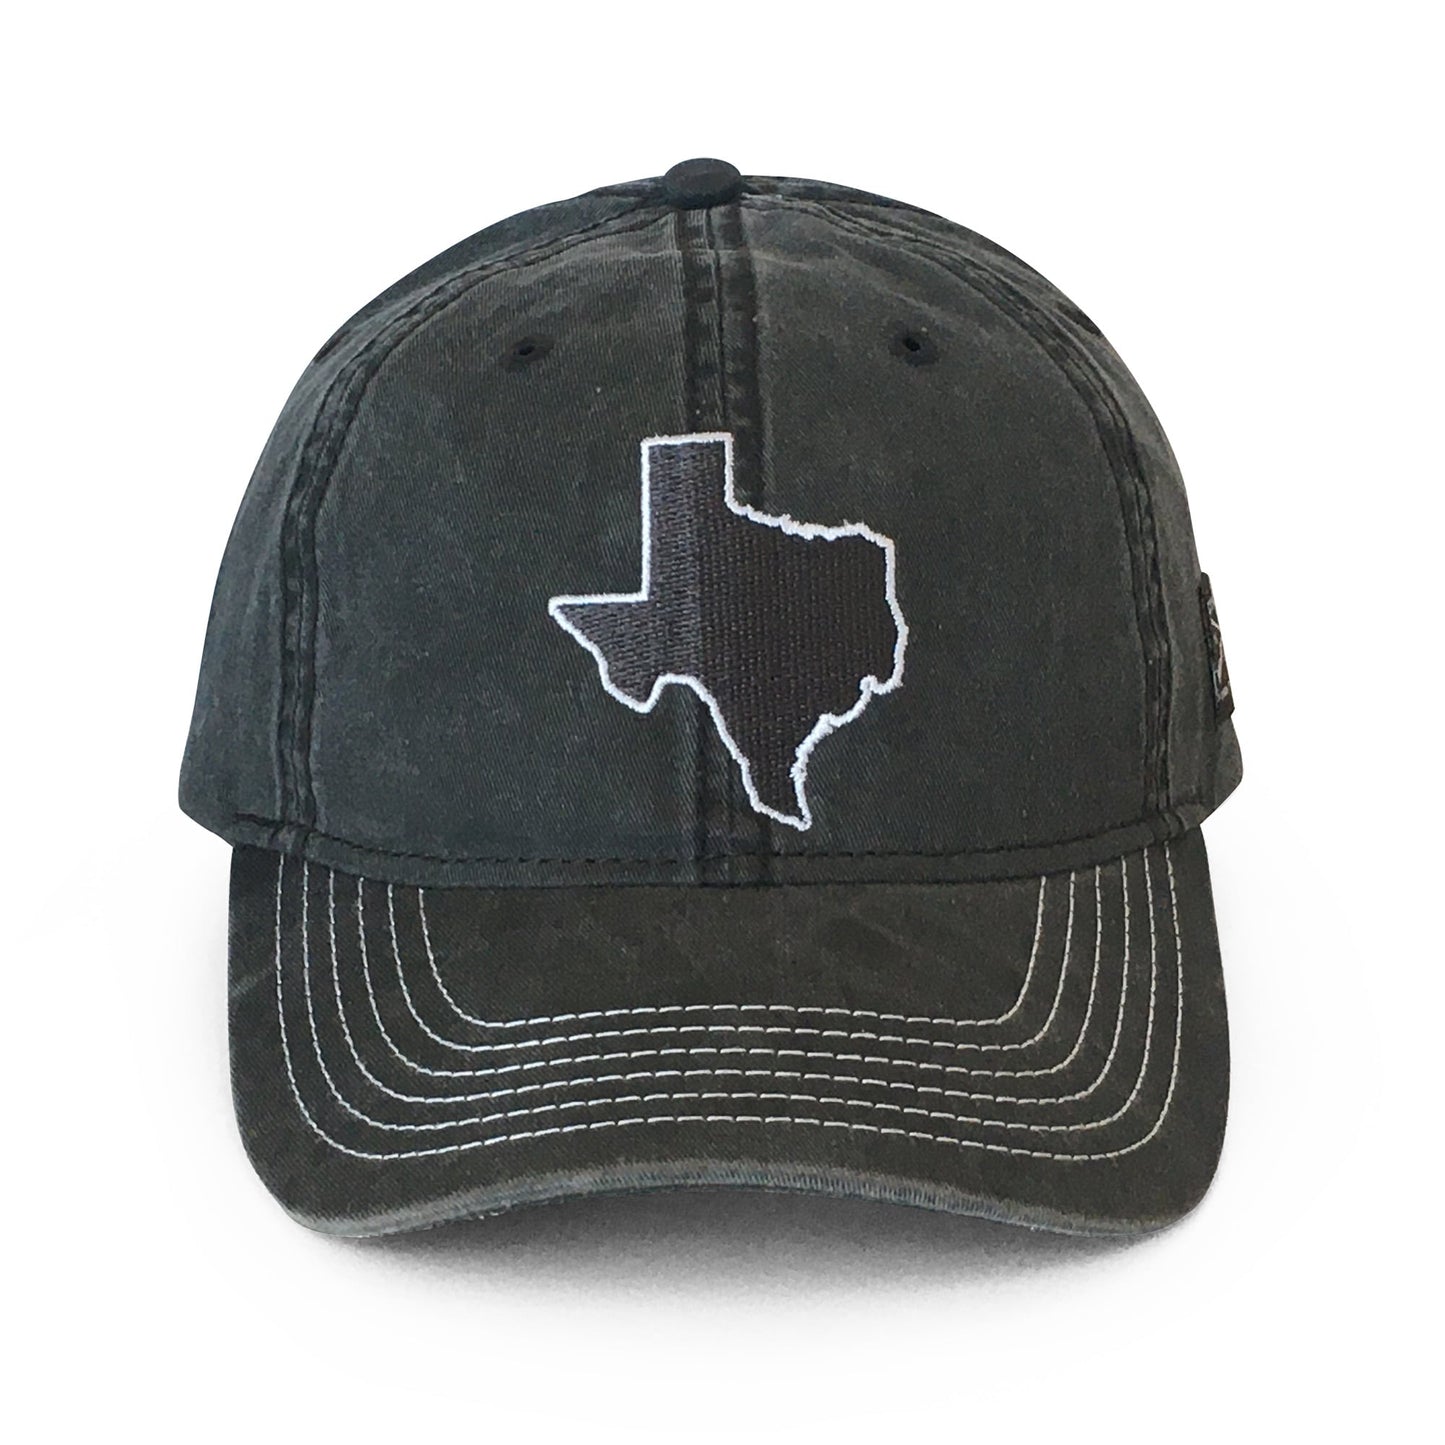 Texas Hats